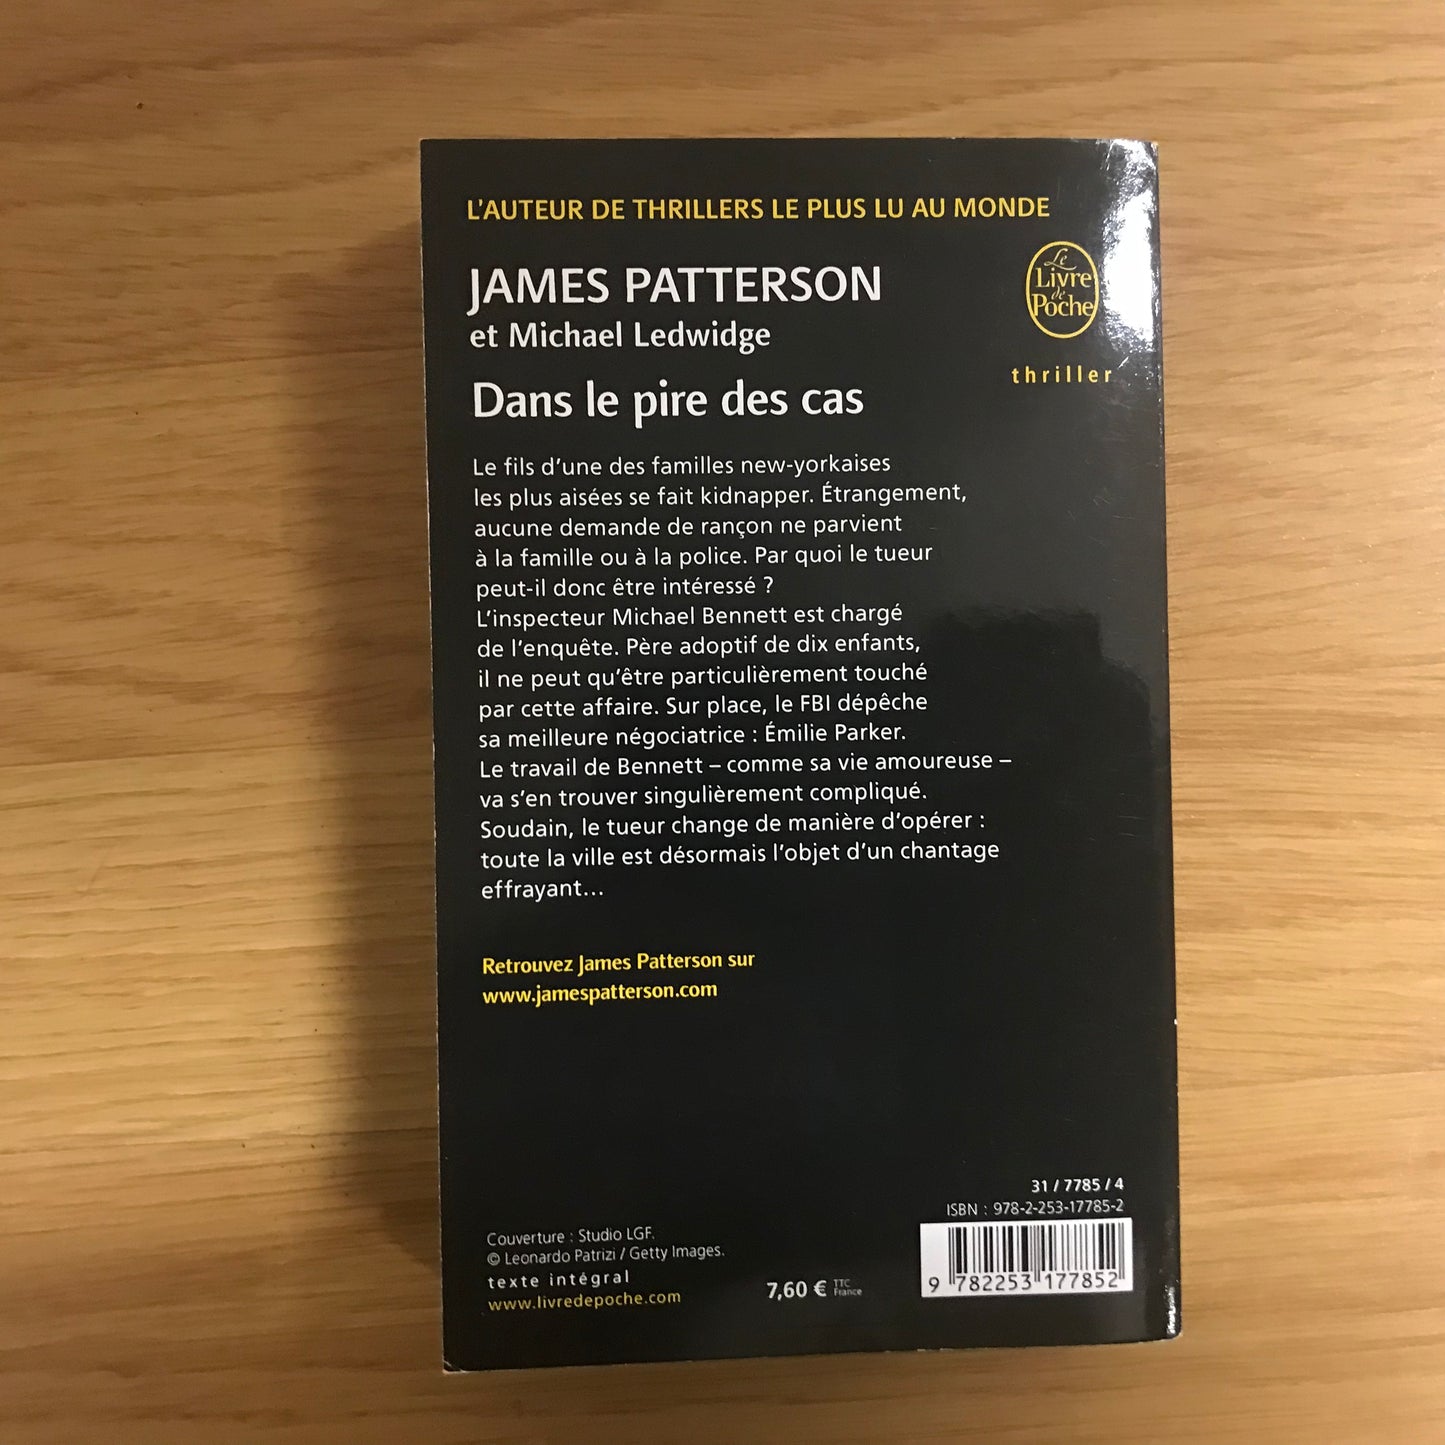 Patterson, James - Dans le pire des cas